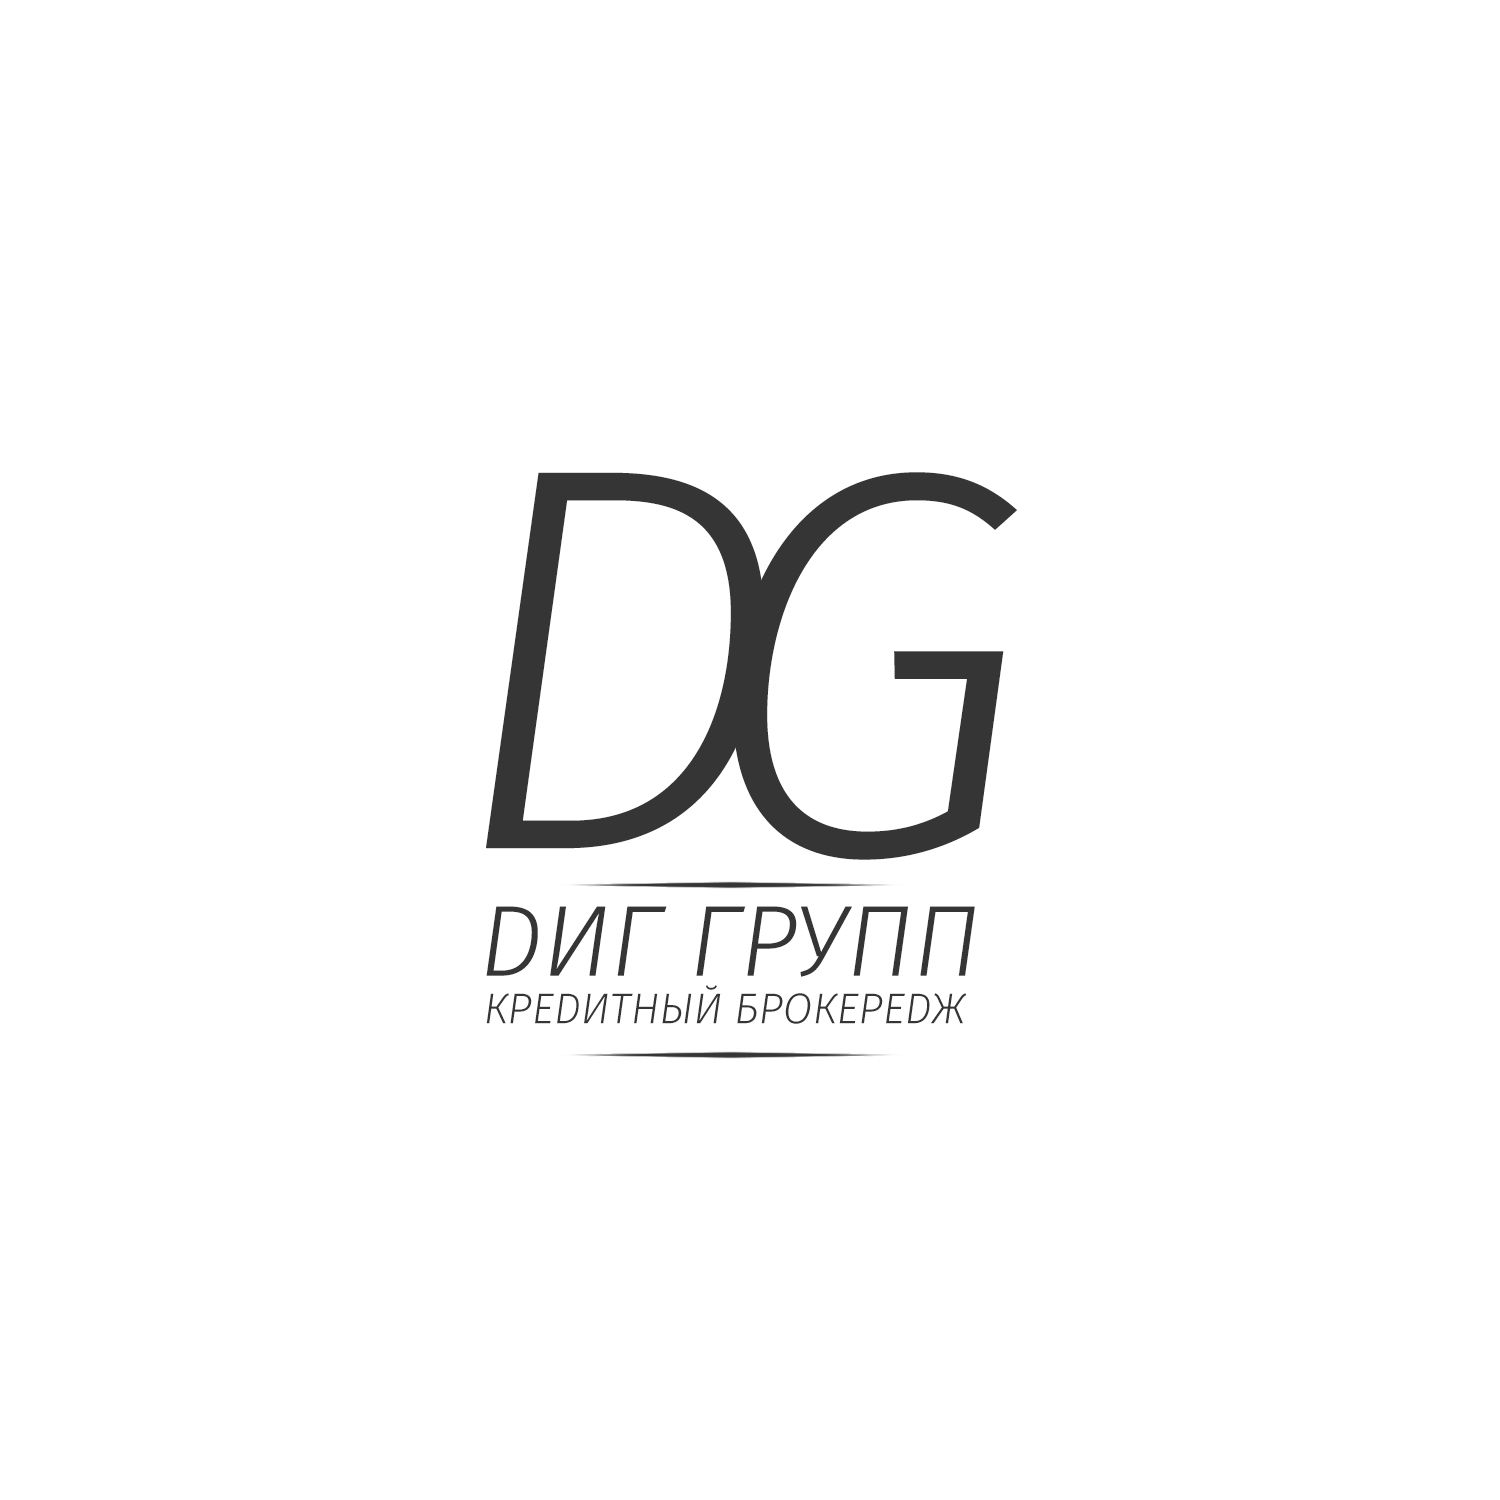 Логотип для финансового брокера ДИГ - дизайнер Freeman21rus